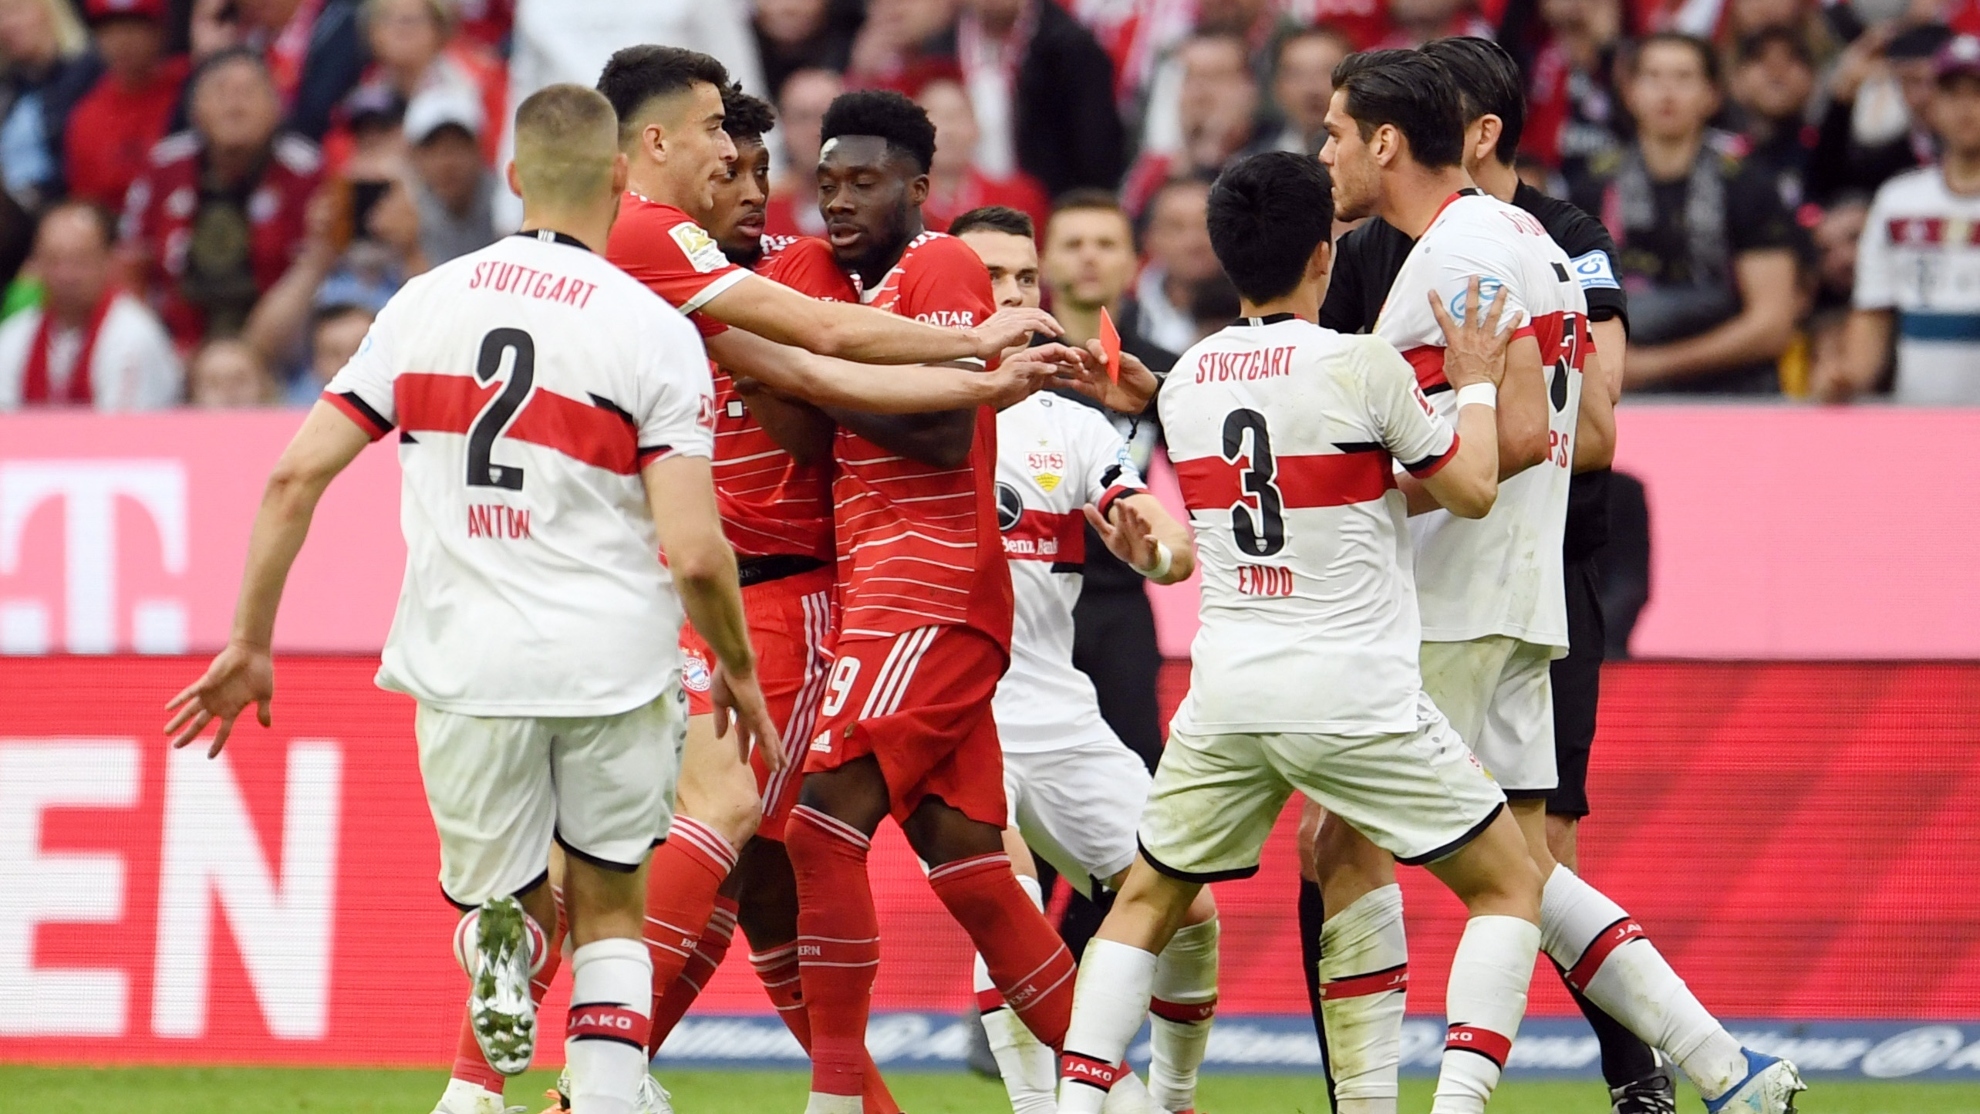 Bayern empata con el Stuttgart en un grandioso partido.